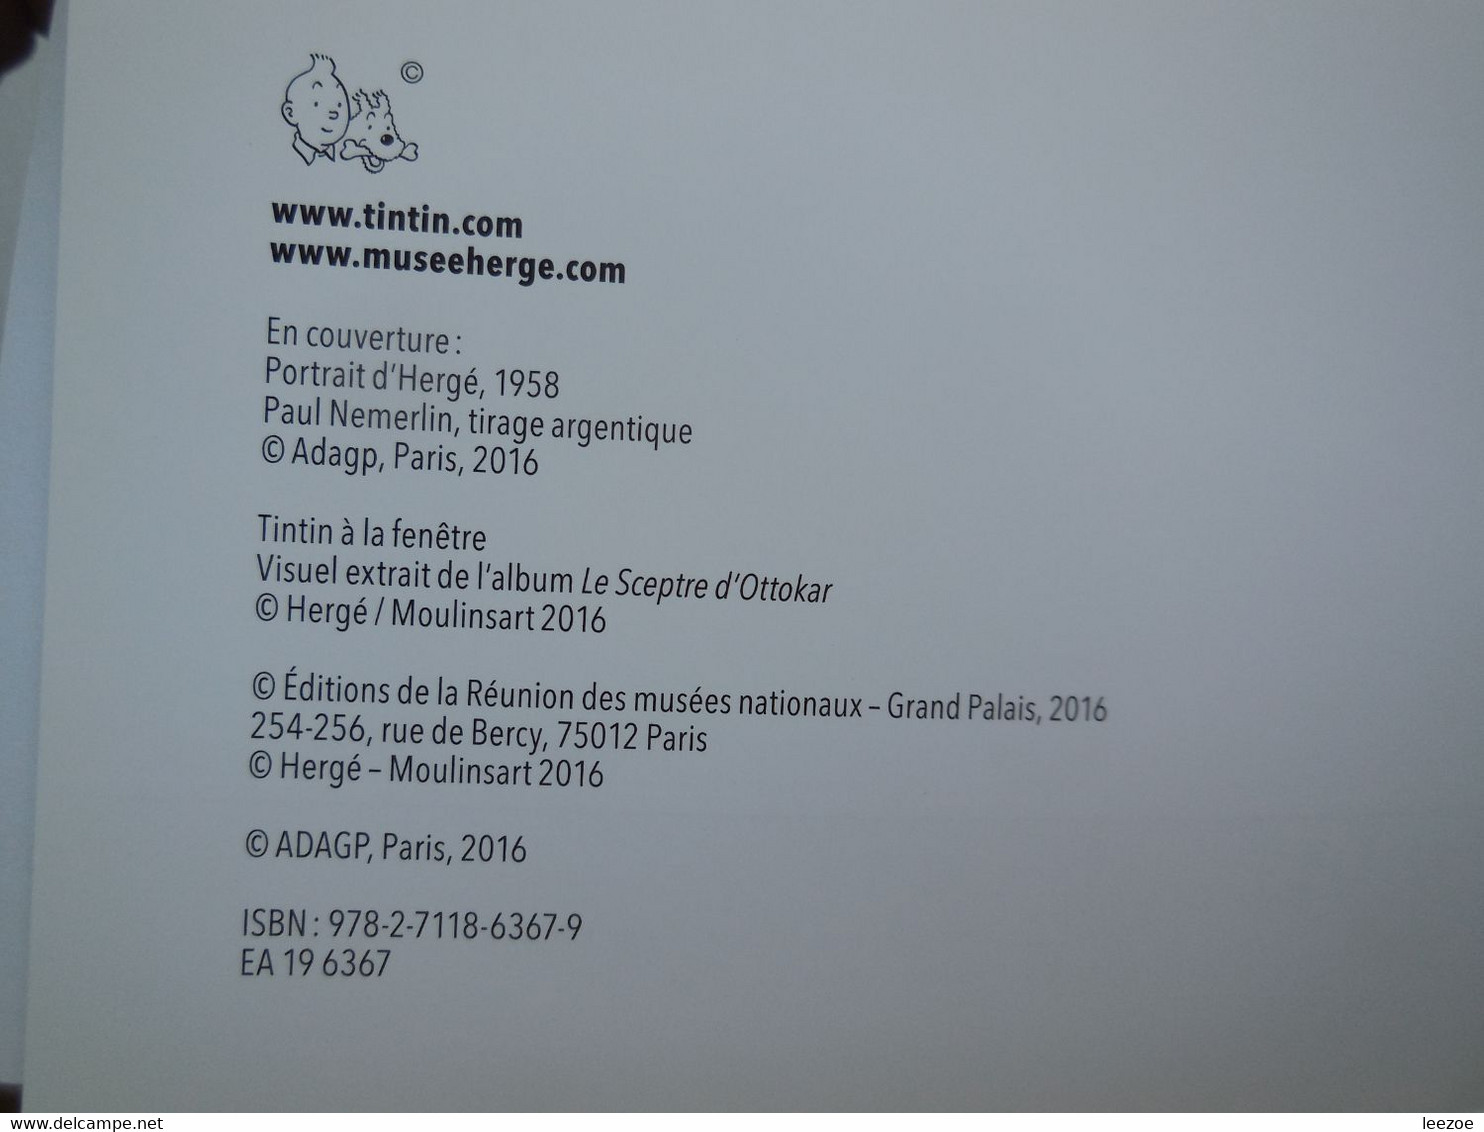 Hergé, L'exposition De Papier Album Relatif à L'exposition Hergé Se Déroulant à Paris Au Grand Palais..PIN03.02.22 - Presseunterlagen